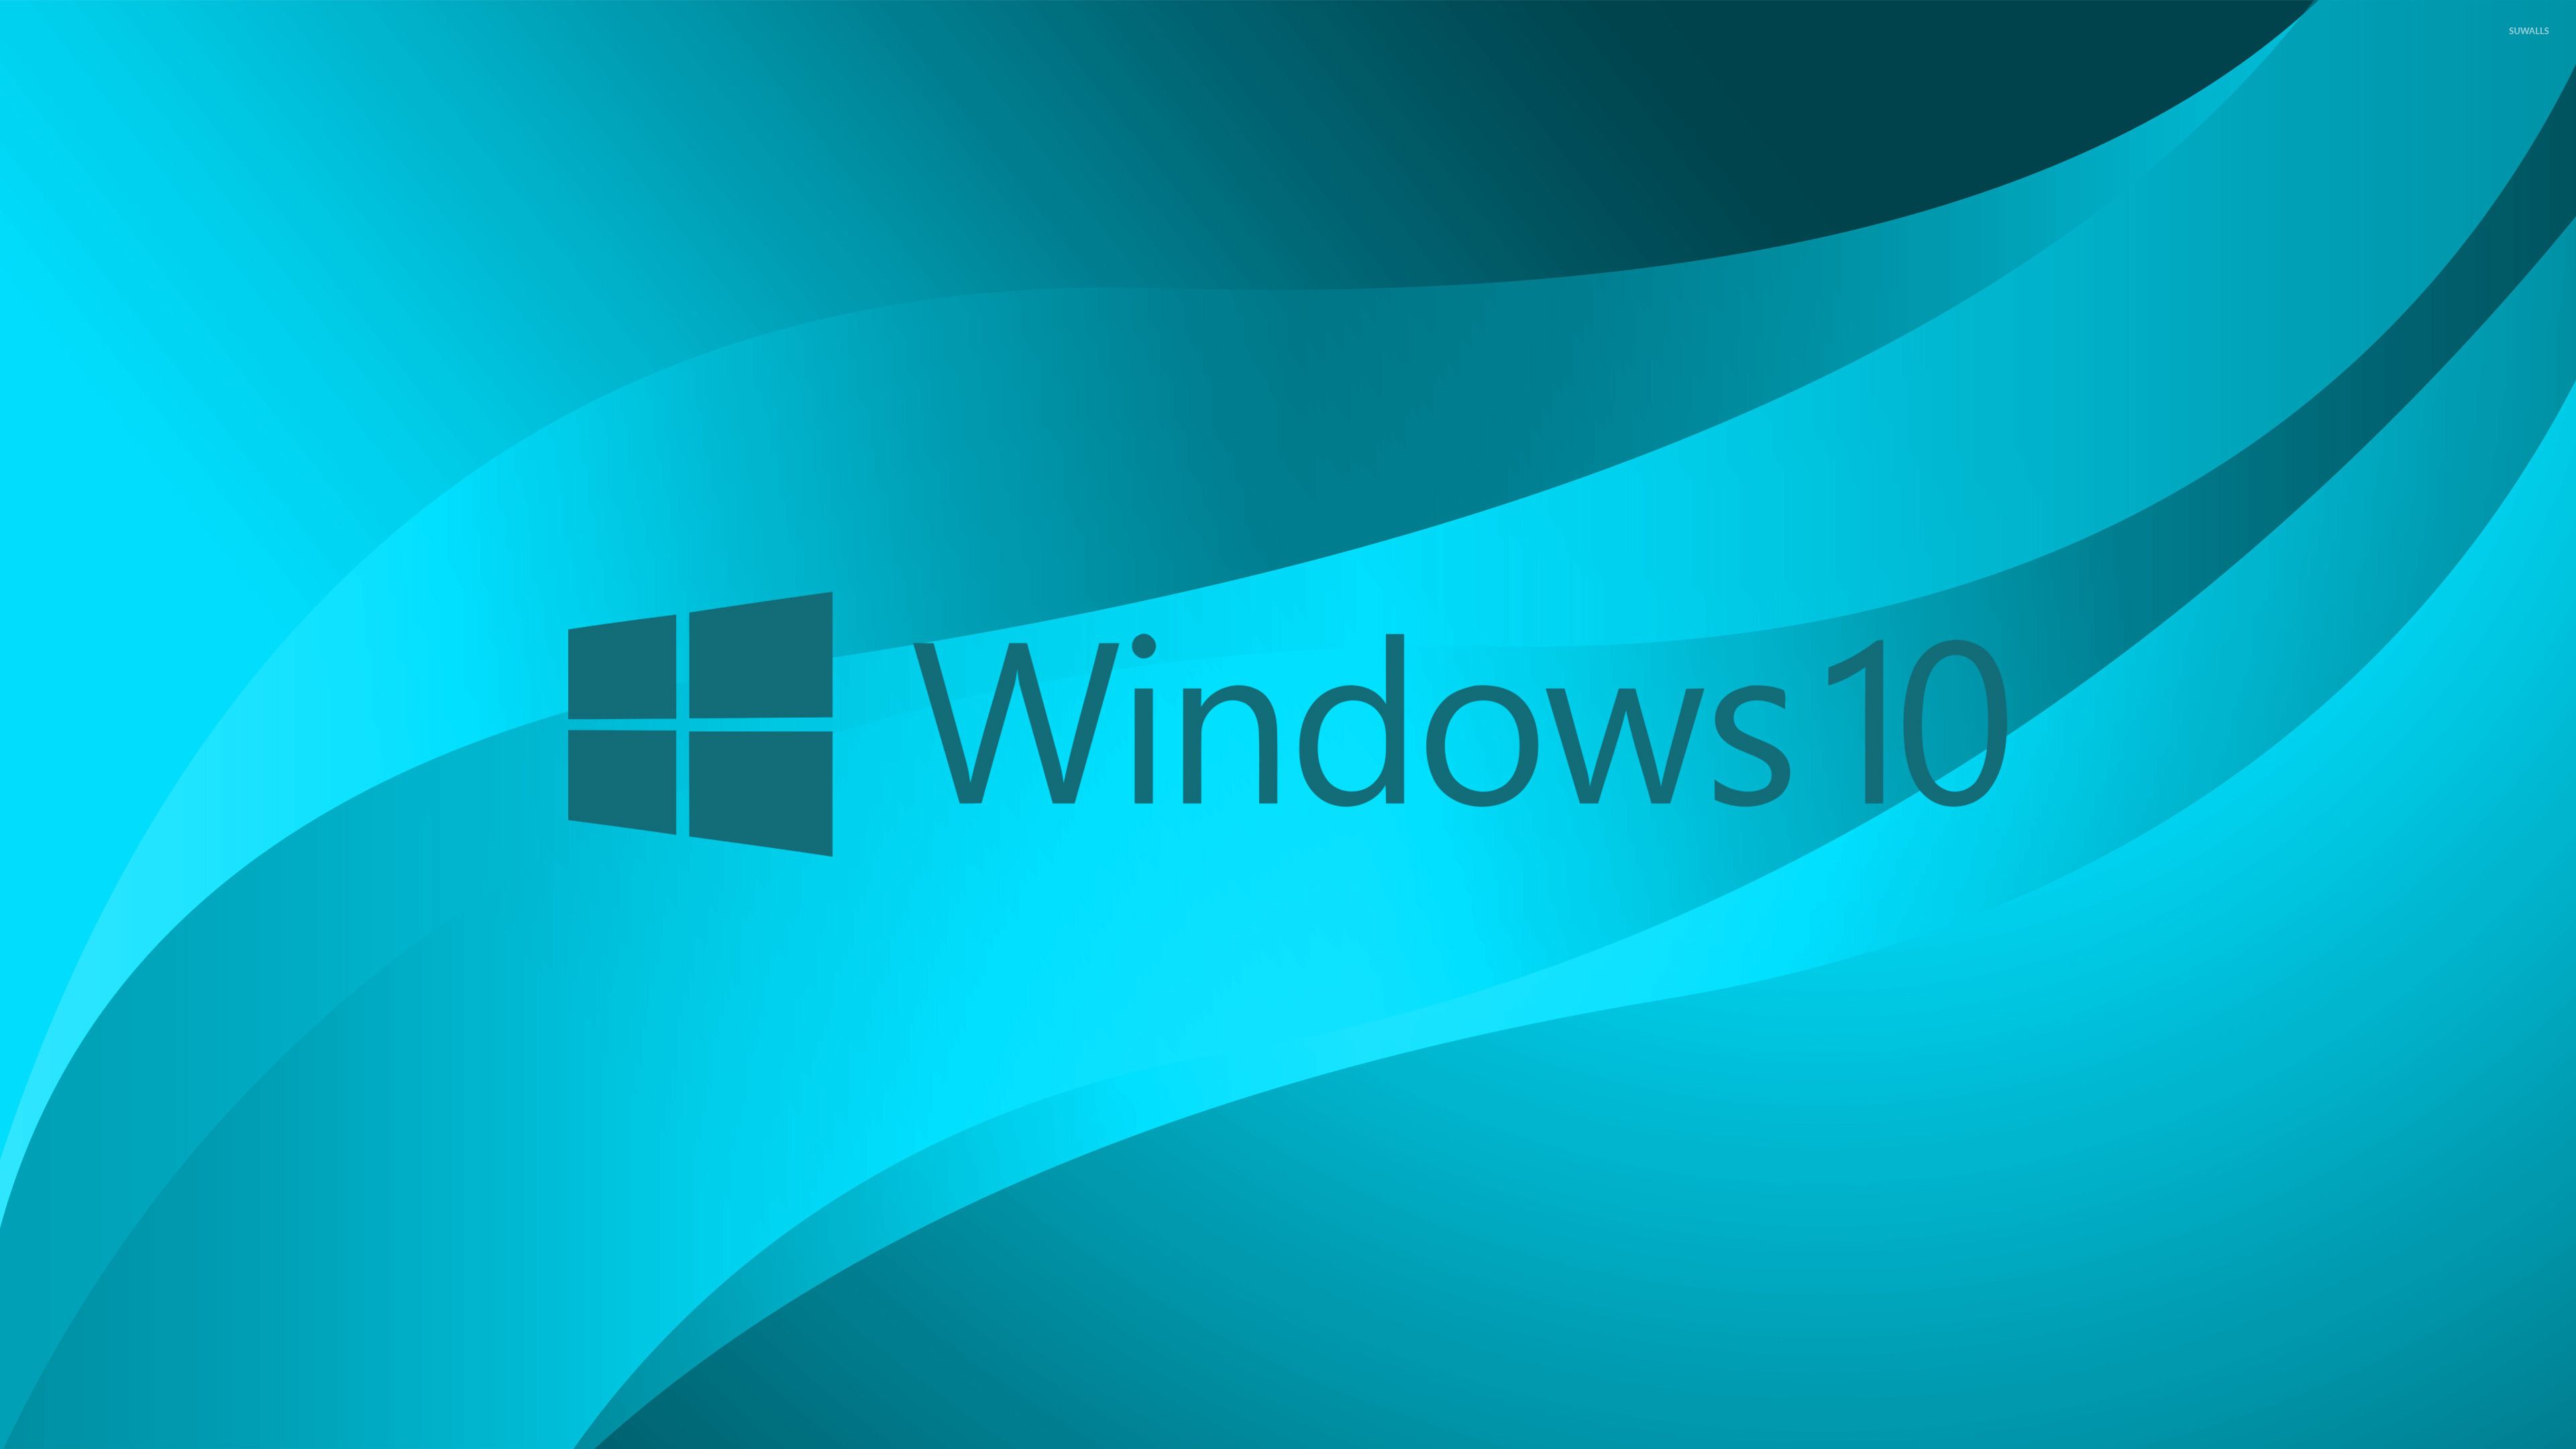 Windows azul antiguo: logotipo de texto azul de Windows 10 en azul claro